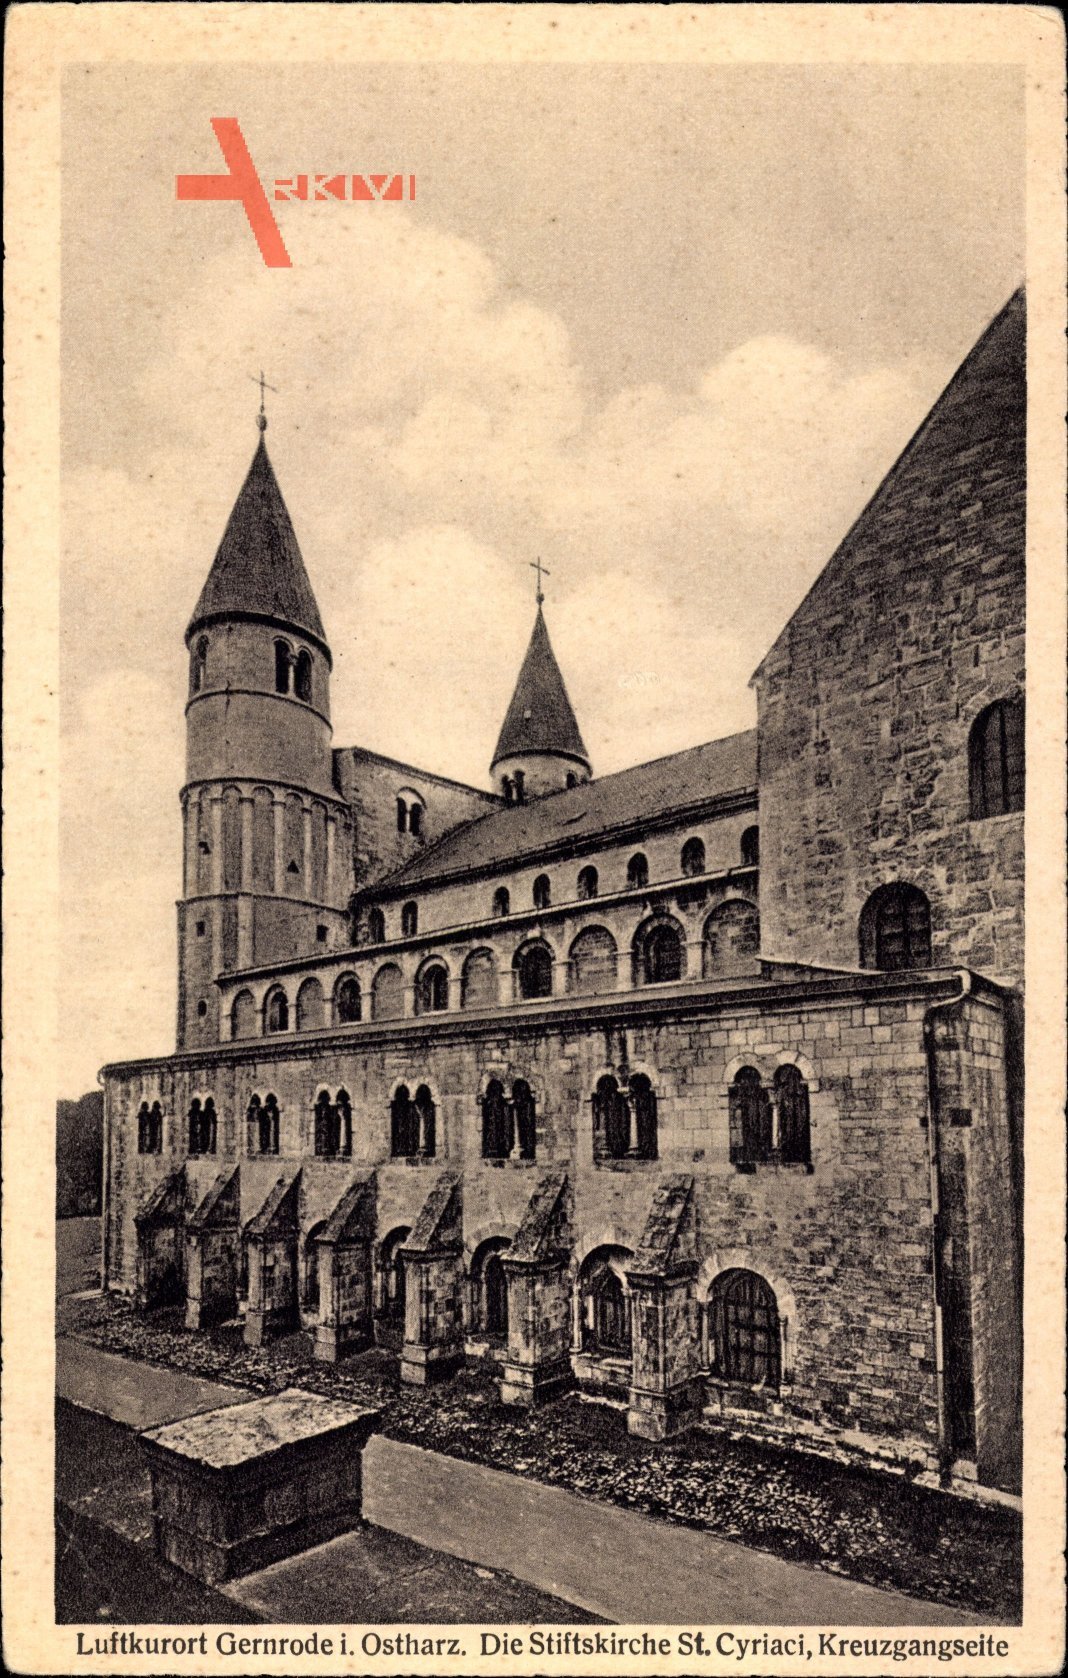 Gernrode im Harz, Blick auf die Stiftskirche St. Cyriaci, Kreuzgangseite